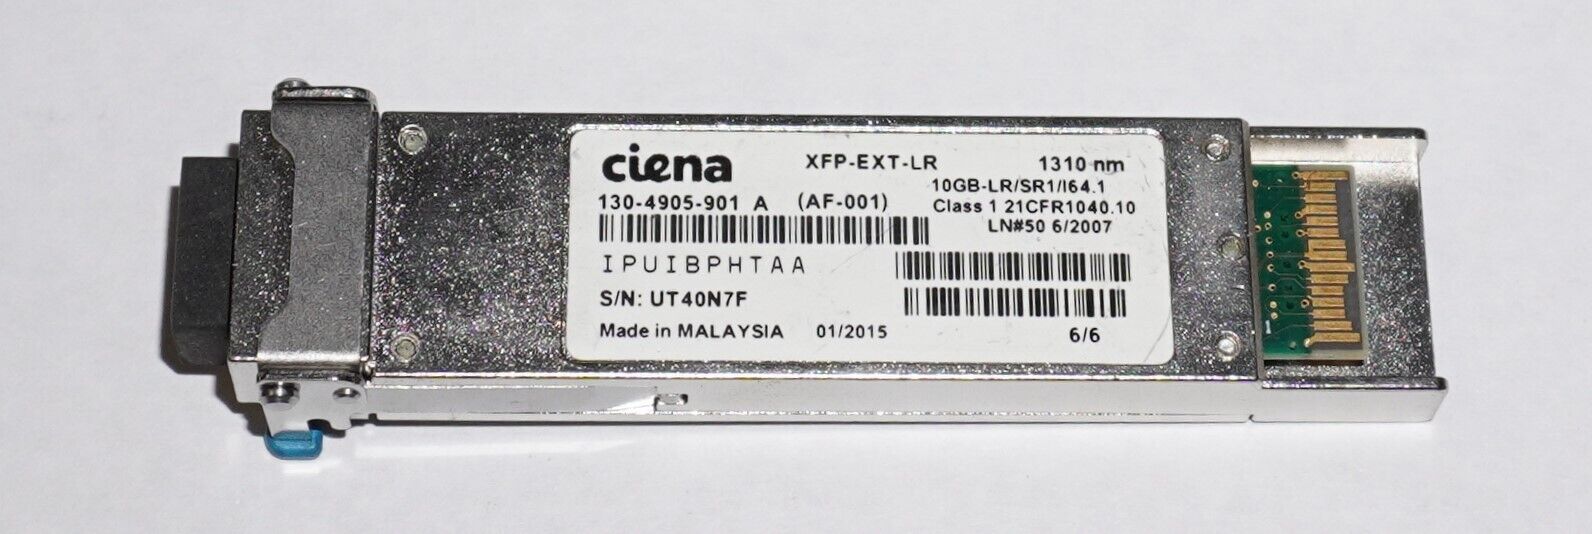 Ciena | XFP-EXT-LR | 130-4905-901 | 10GB-LR SR1 Transceiver Module